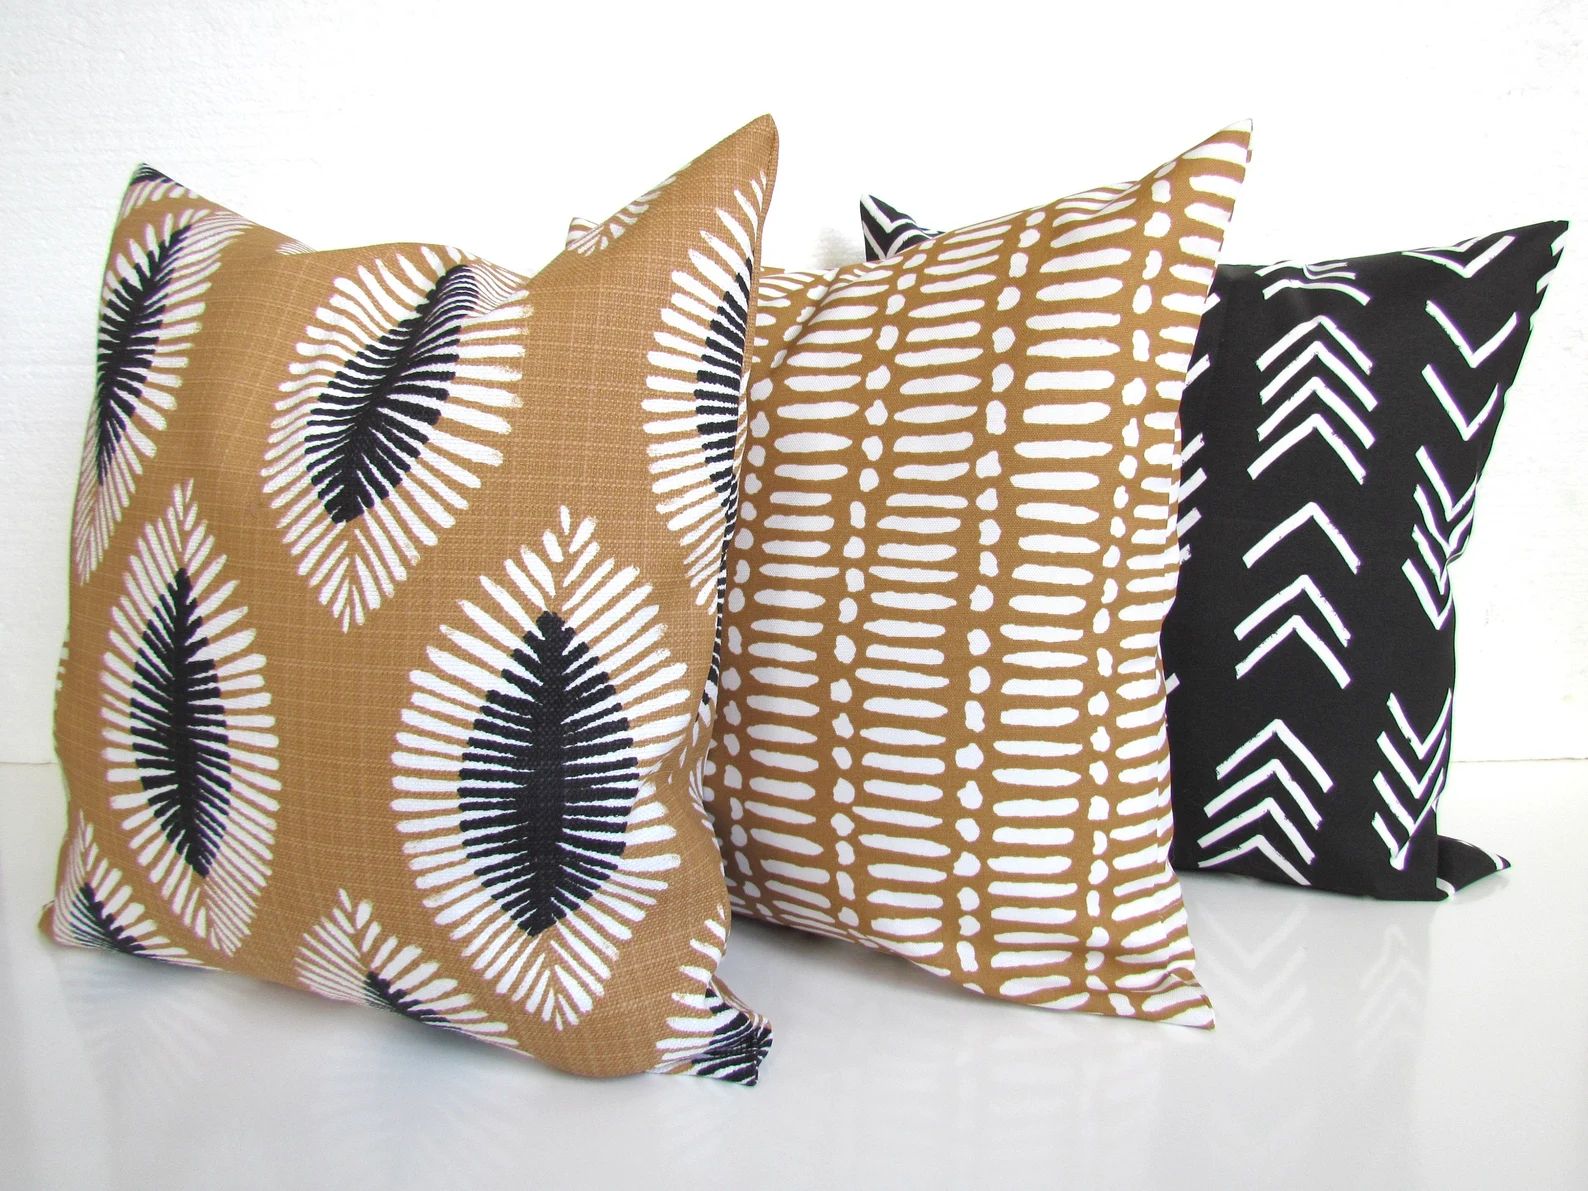 Black Outdoor Pillows Gray Outdoor Throw Pillow Covers Charcoal Outdoor Pillow Covers Tan Grey Tr... | Etsy (US)